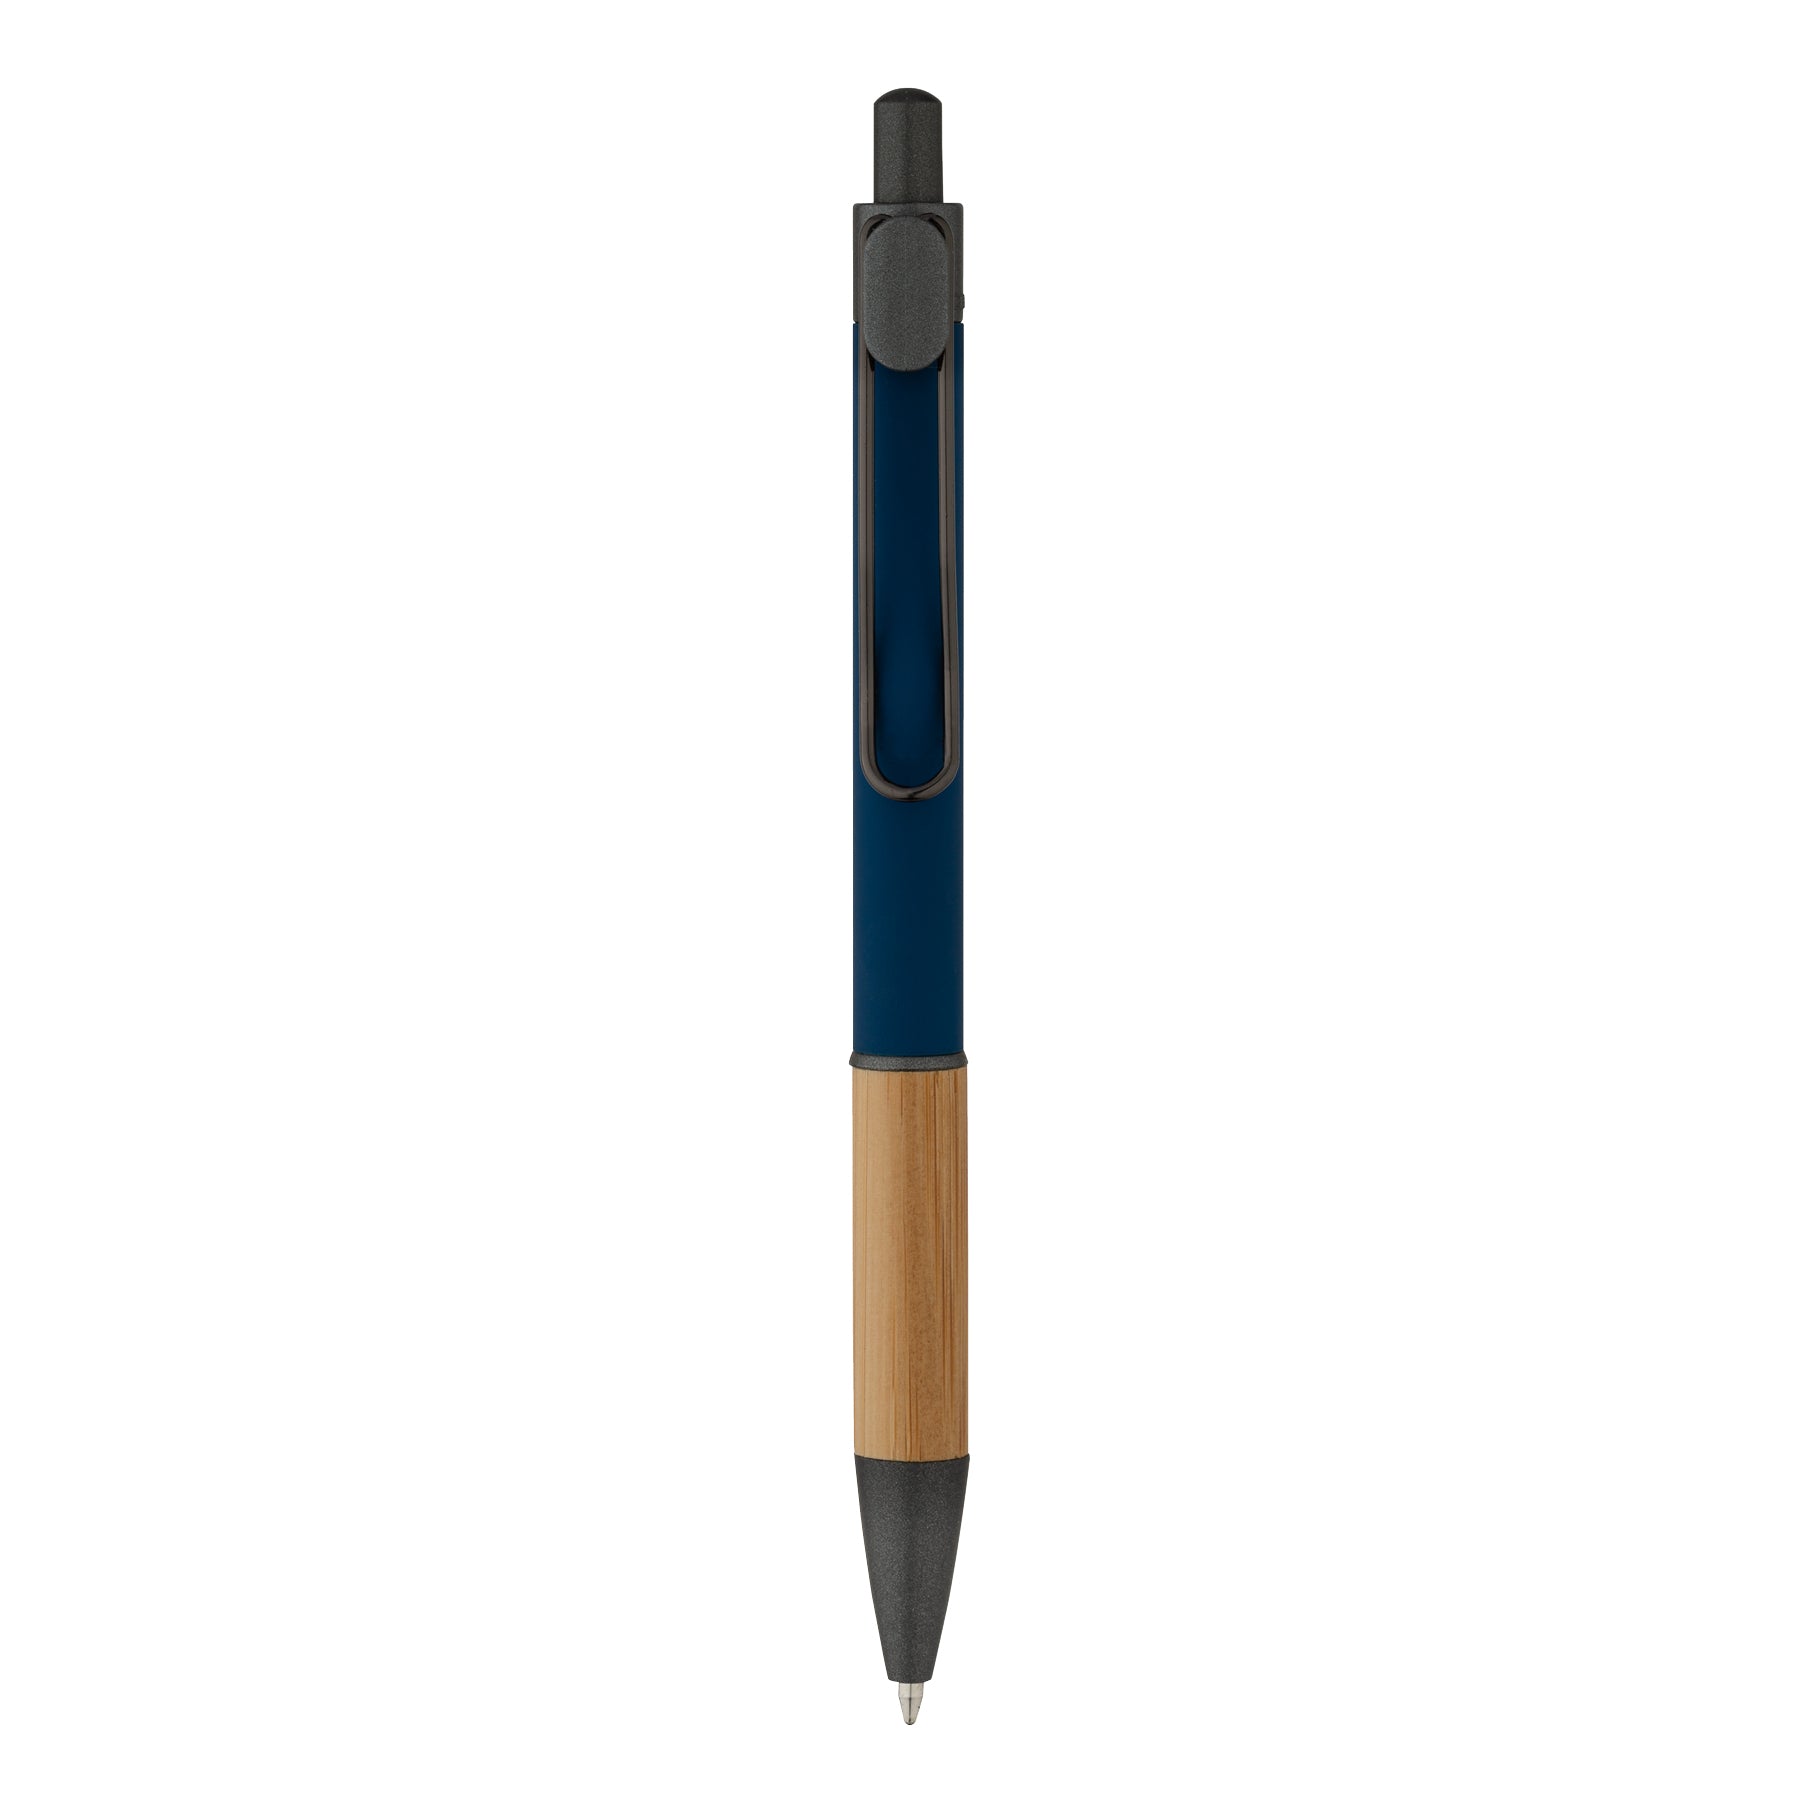 Customized manoa ballpoint bamboo pen in navy.